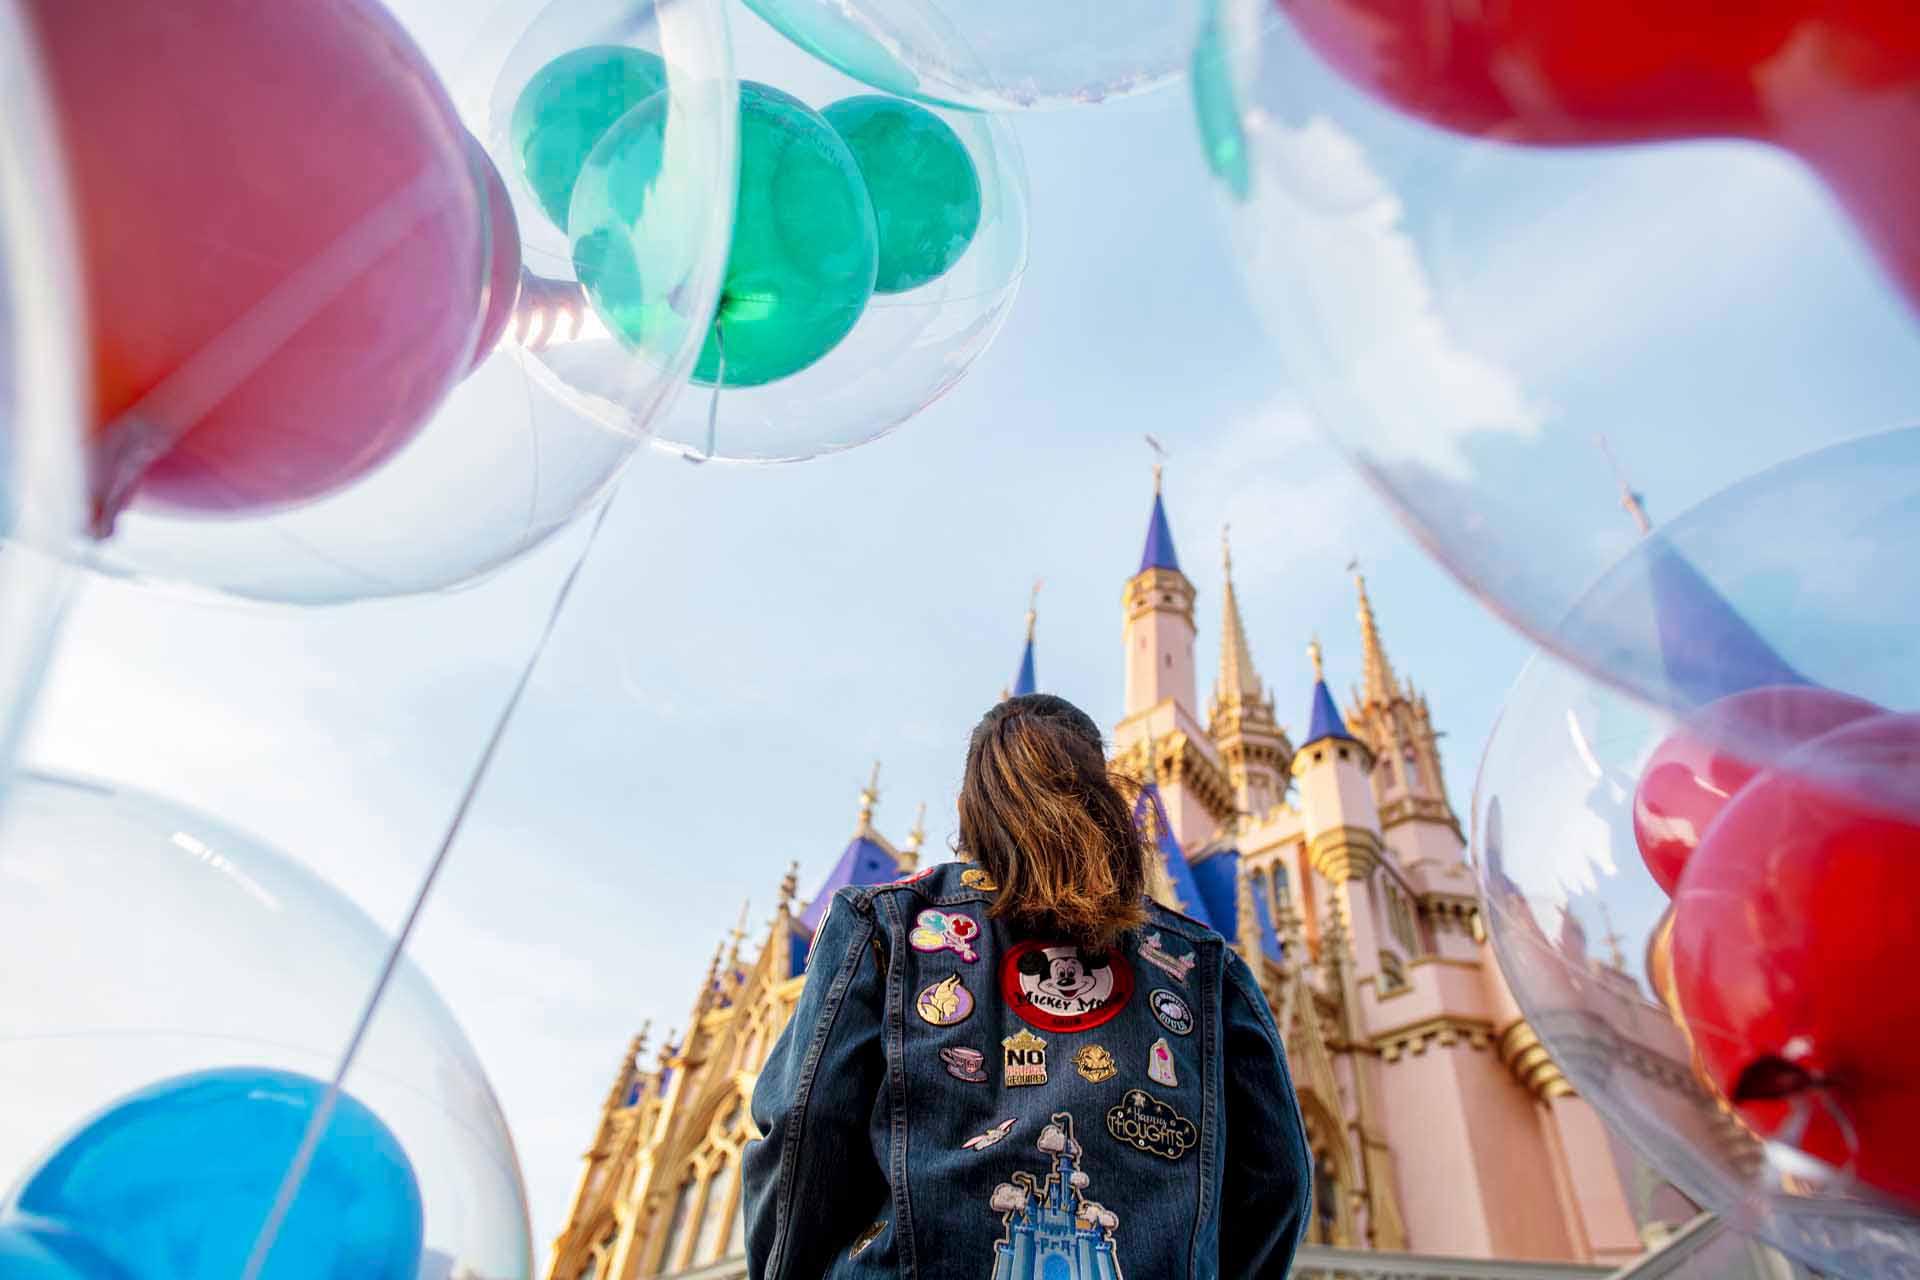 فتاة تقف أمام قلعة سندريلا في المملكة السحرية، وتحيط بها البالونات